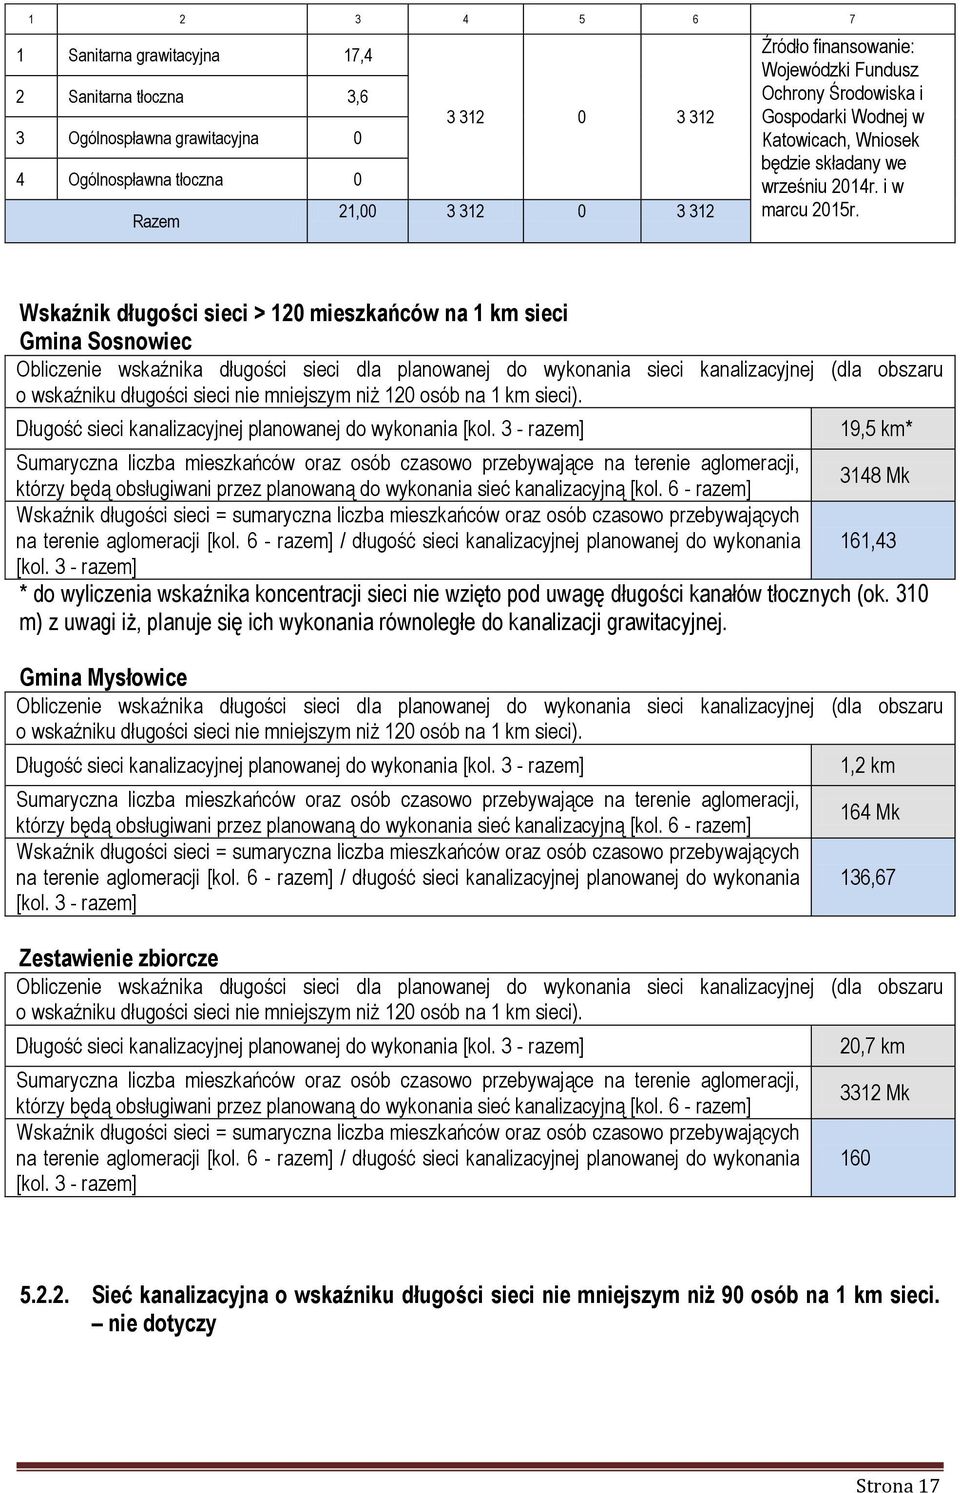 Wskaźnik długości sieci > 120 mieszkańców na 1 km sieci Gmina Sosnowiec Obliczenie wskaźnika długości sieci dla planowanej do wykonania sieci kanalizacyjnej (dla obszaru o wskaźniku długości sieci